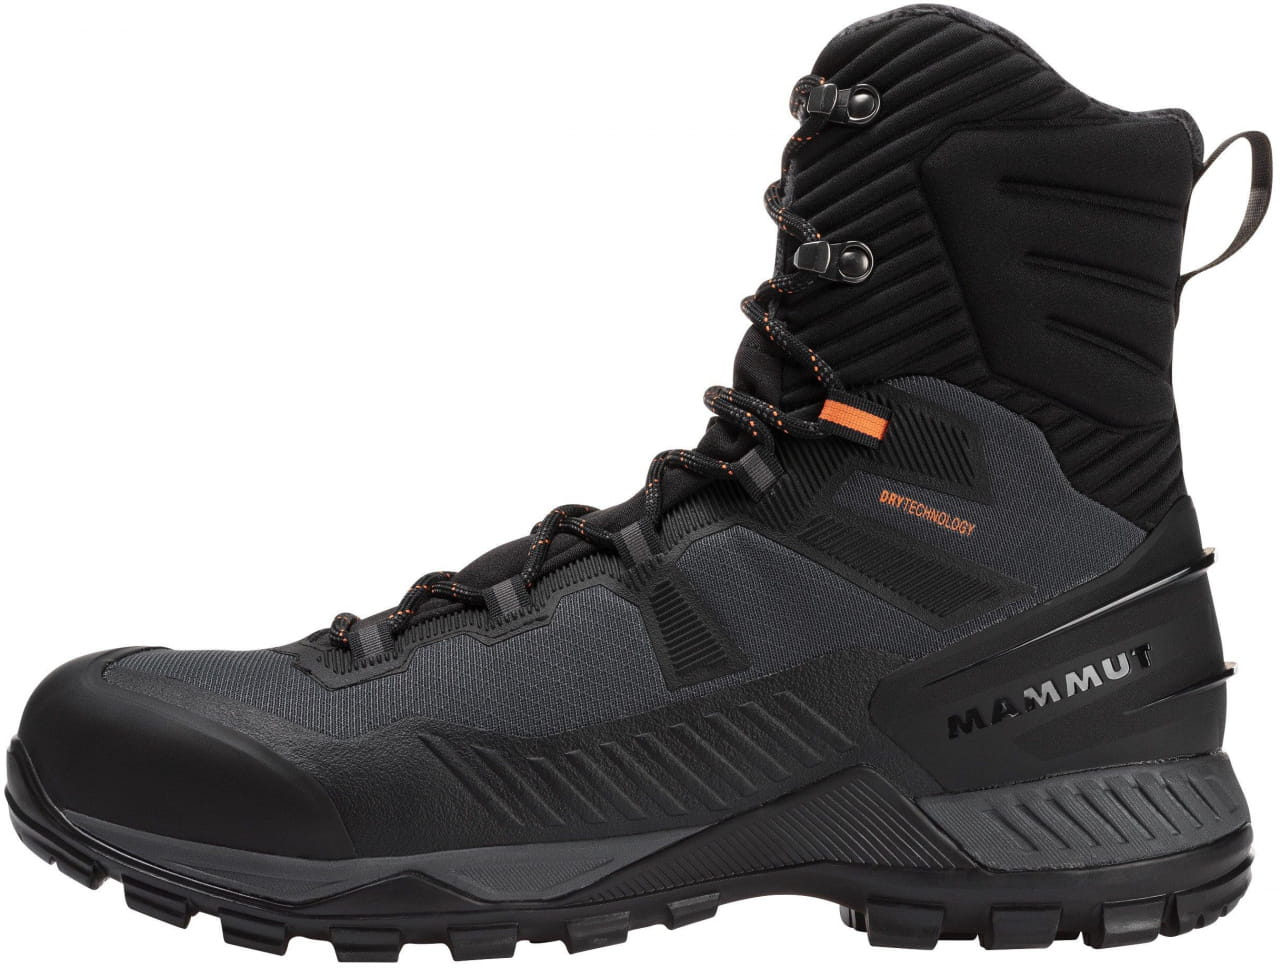 Chaussures imperméables pour la randonnée dans la neige et en montagne Mammut Blackfin III WP High Men